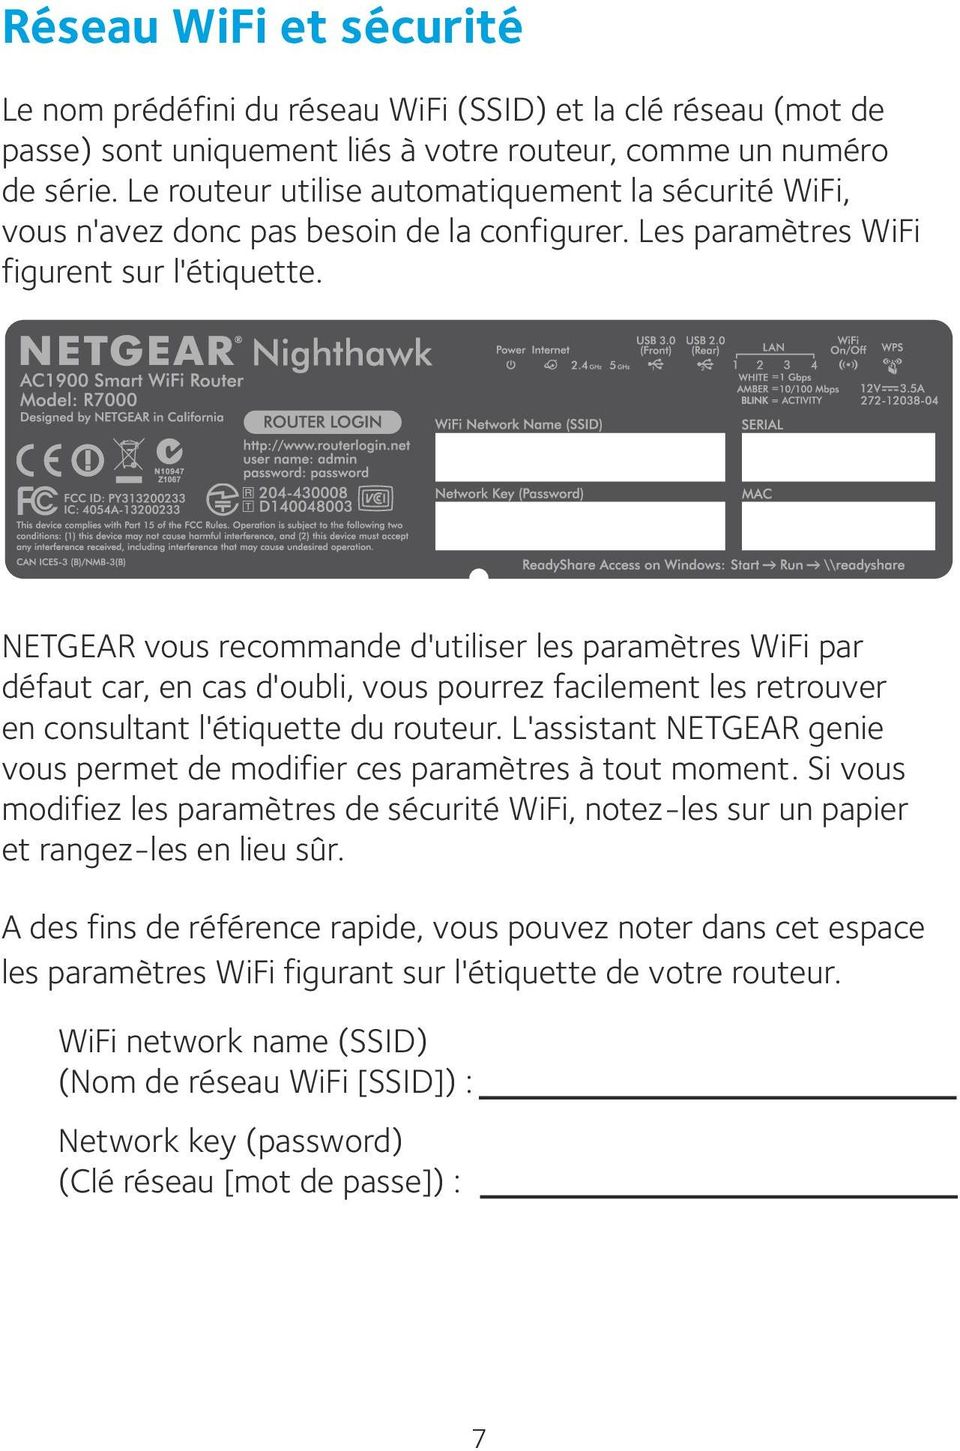 NETGEAR vous recommande d'utiliser les paramètres WiFi par défaut car, en cas d'oubli, vous pourrez facilement les retrouver en consultant l'étiquette du routeur.